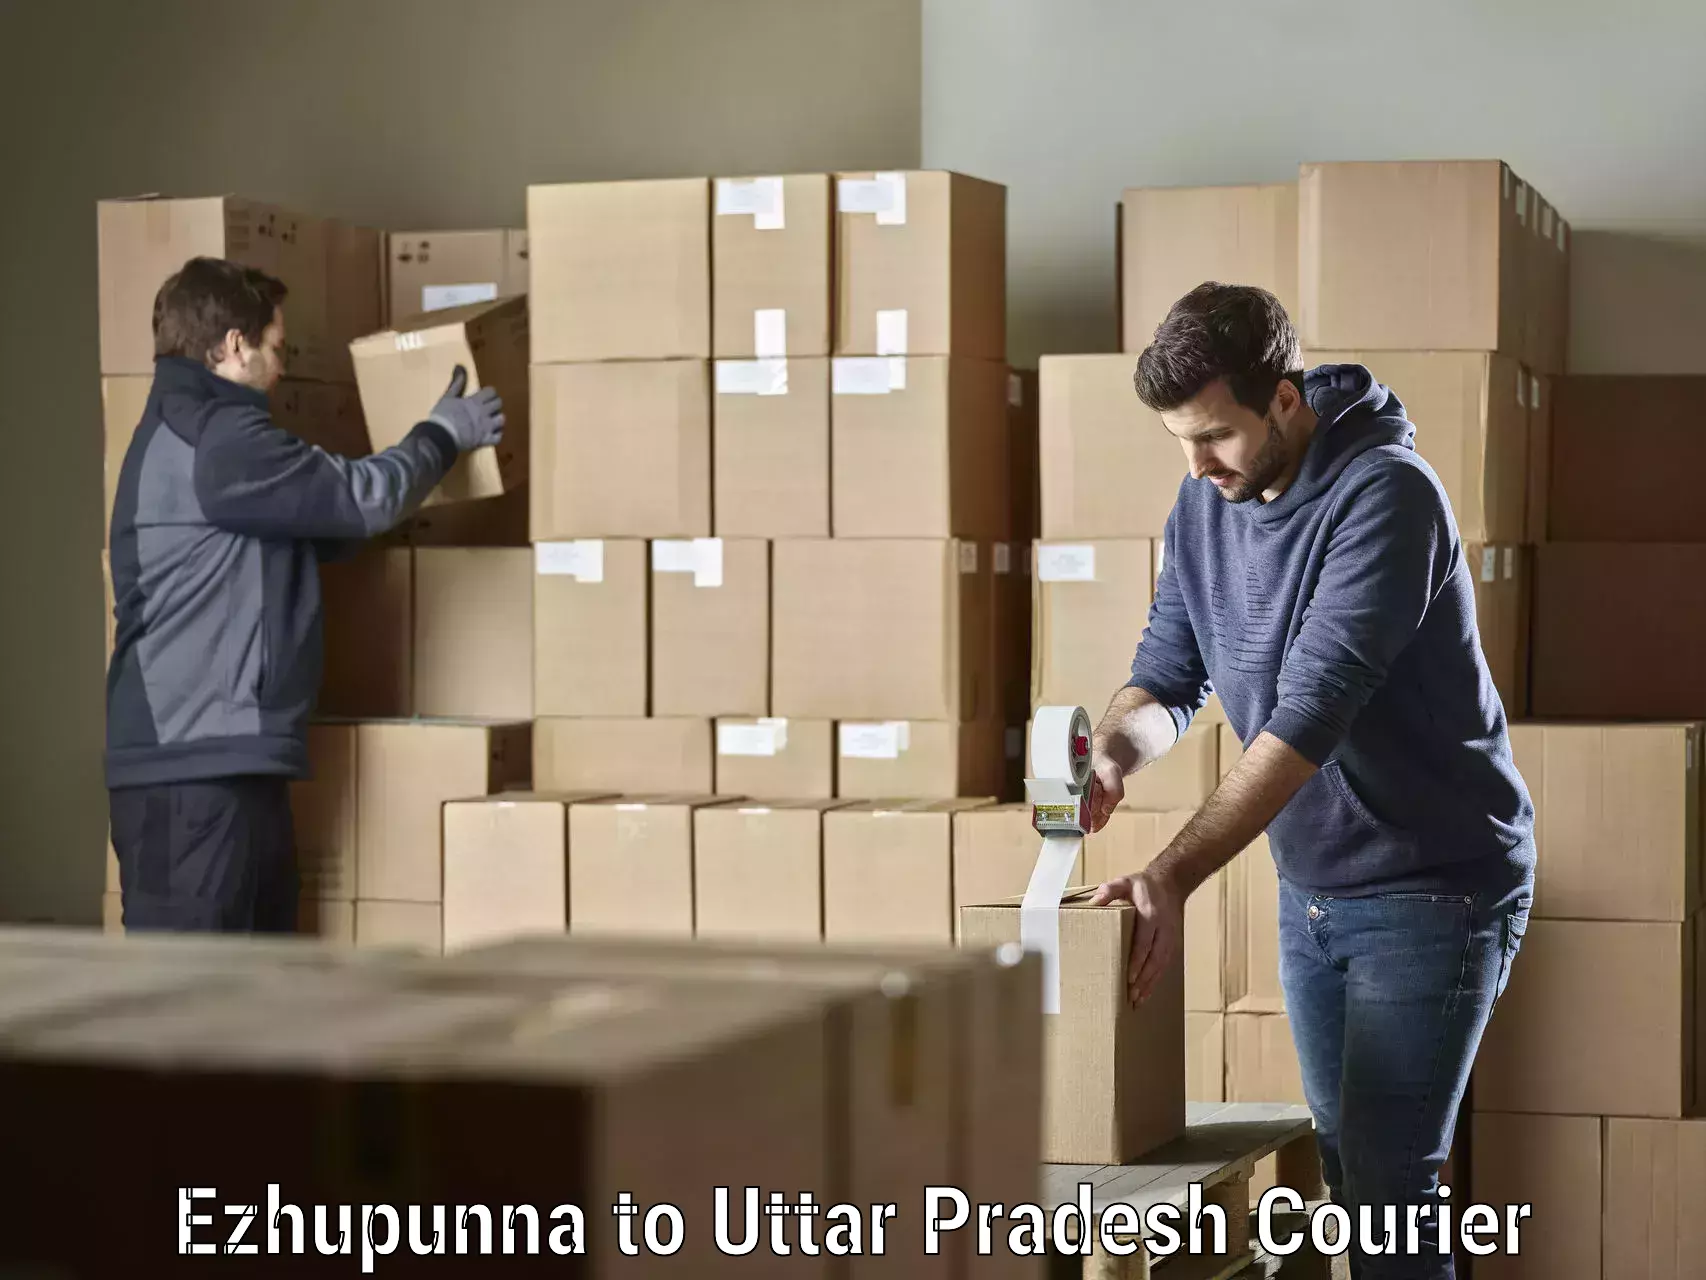 High-performance logistics Ezhupunna to Ayodhya